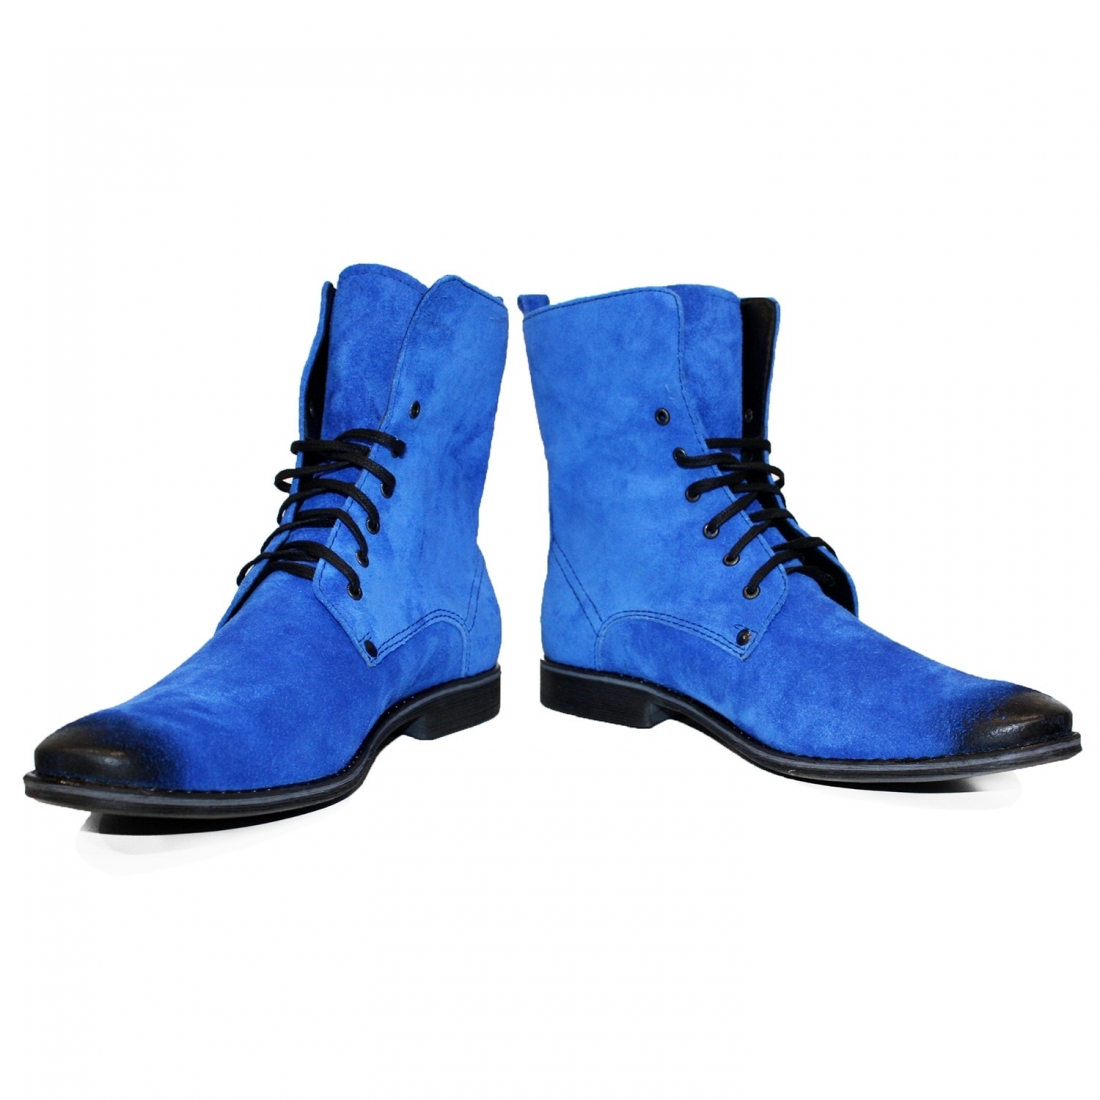 Modello Domatetto - Stivali Alti - Handmade Colorful Italian Leather Shoes